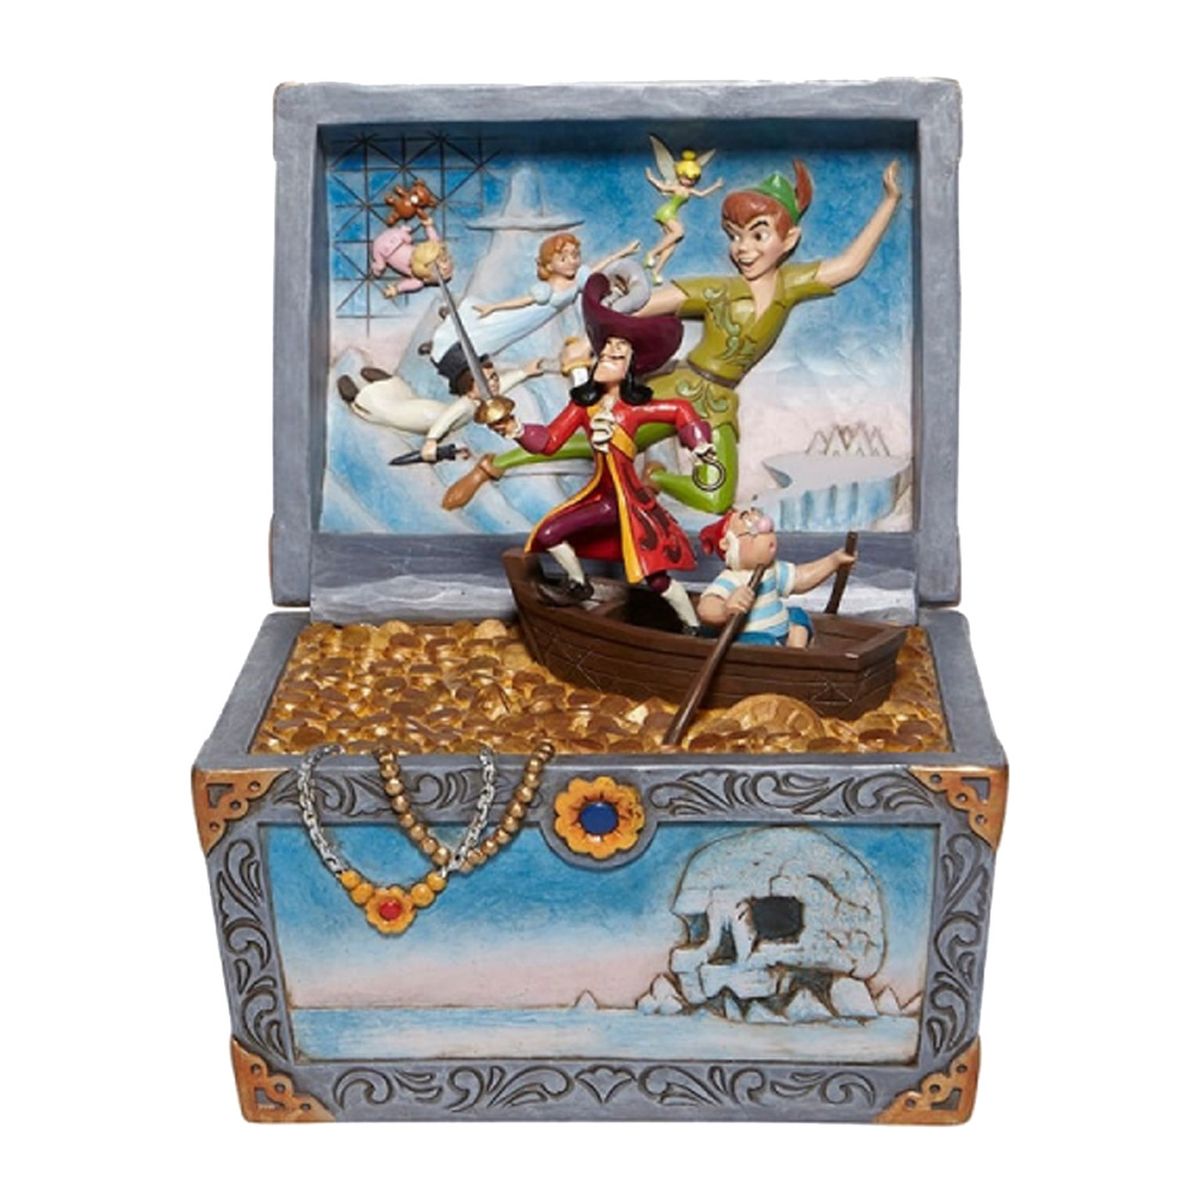 Treasure strewn Tableau - Peter Pan Flying Scene Figurine